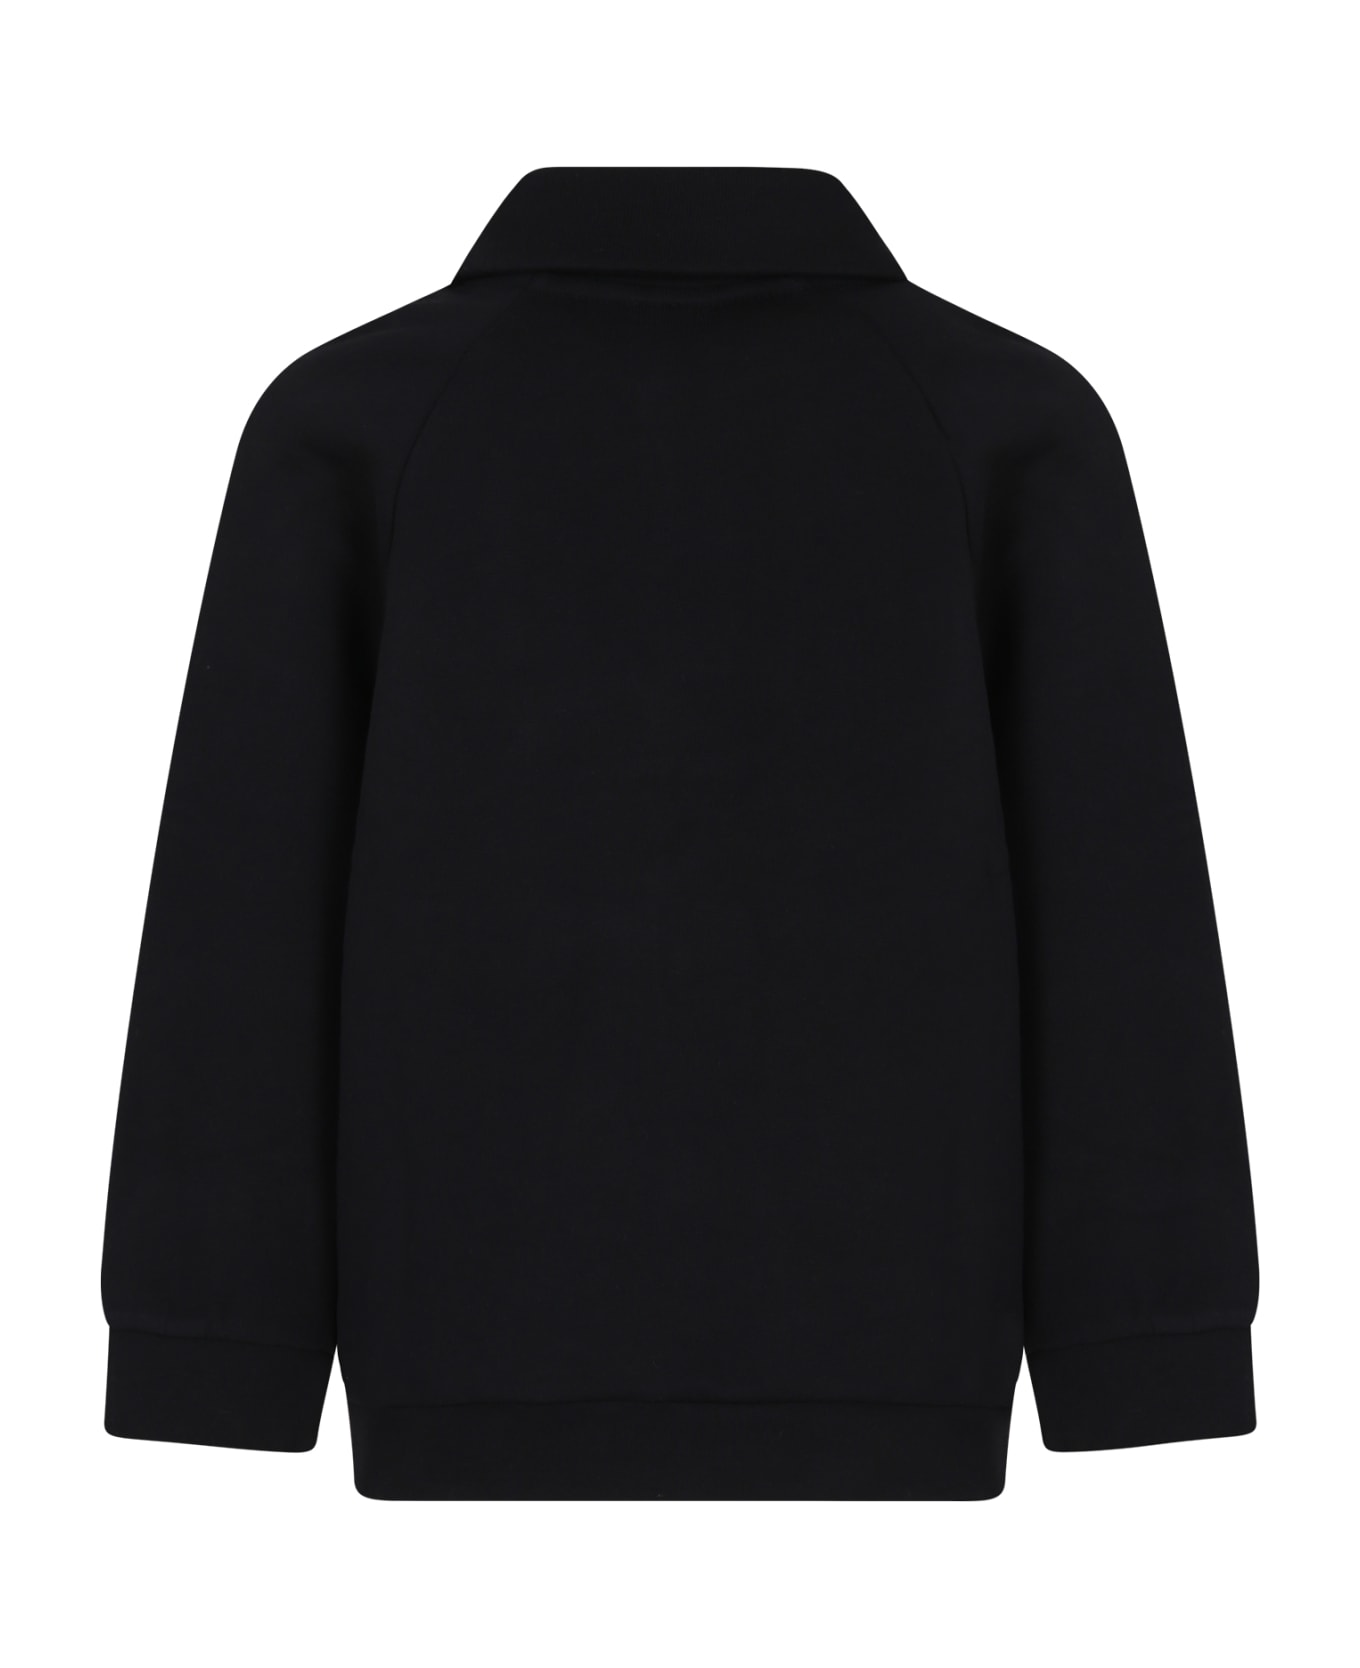 Fendi Black Sweatshirt For Boy With Fendi Logo - Black ニットウェア＆スウェットシャツ